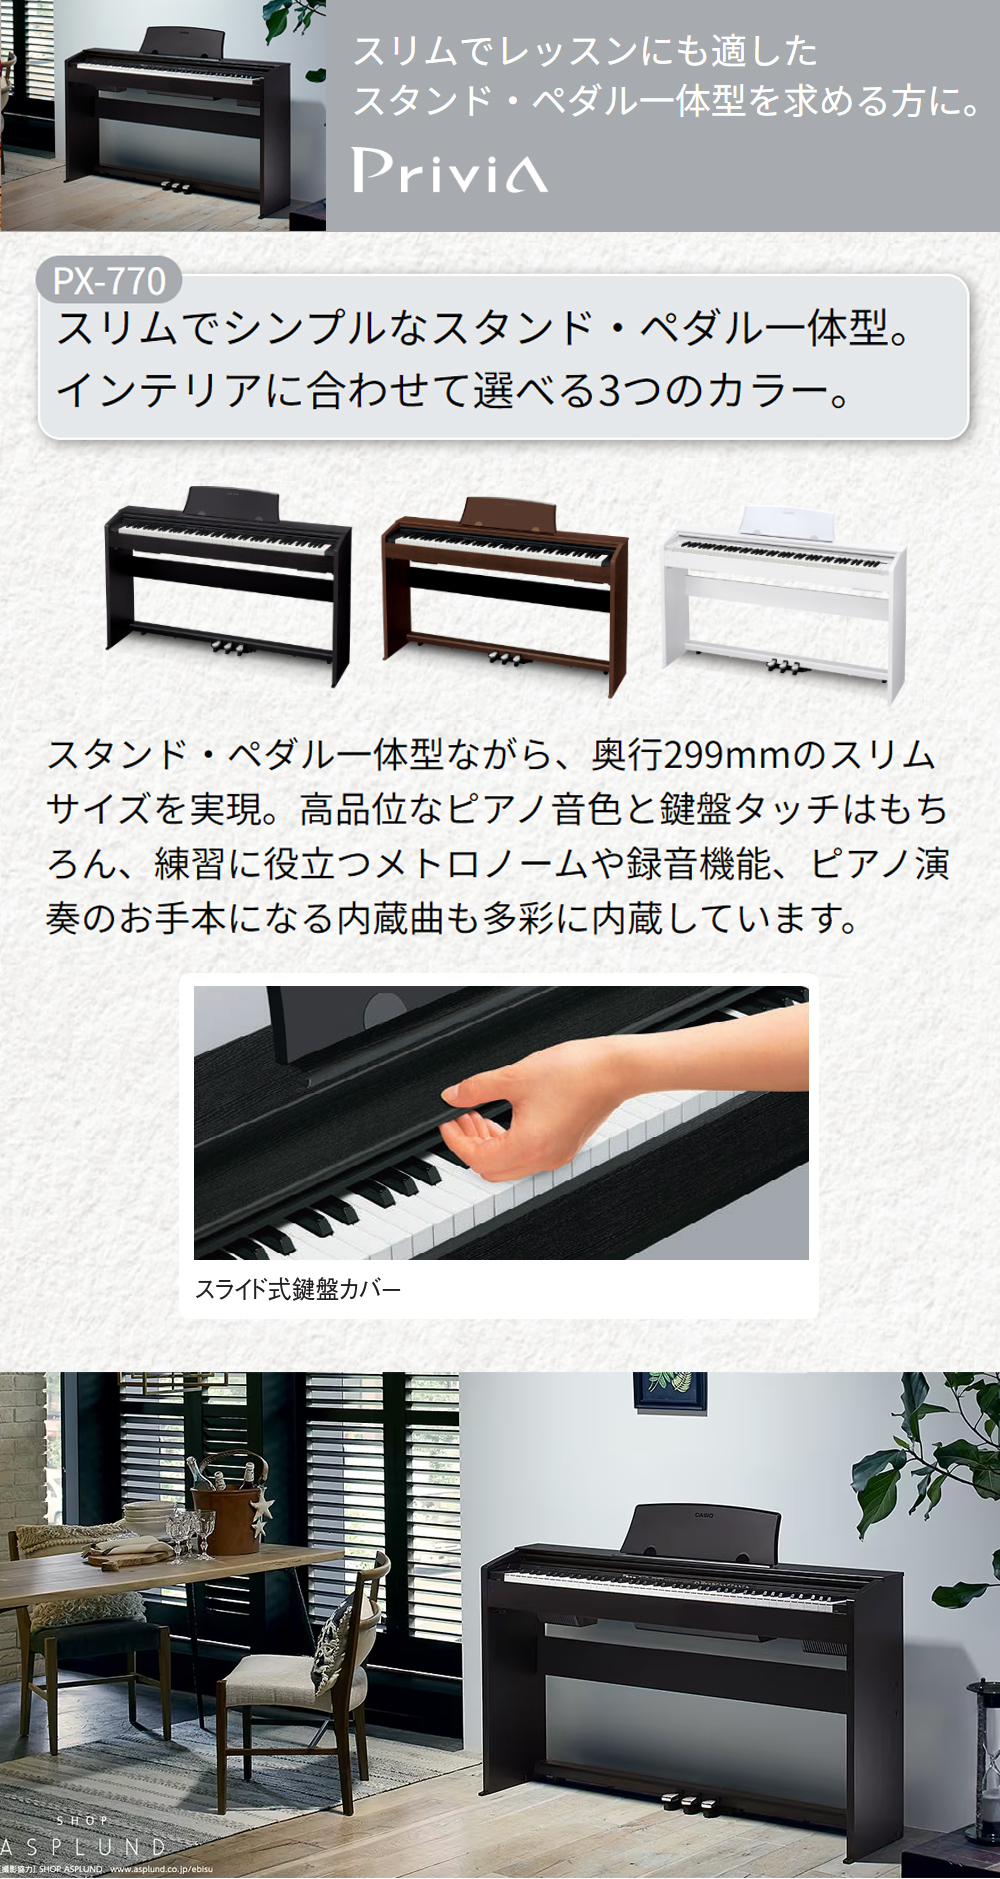 11,900円CASIO Privia PX-770 電子ピアノ　高低イス付き